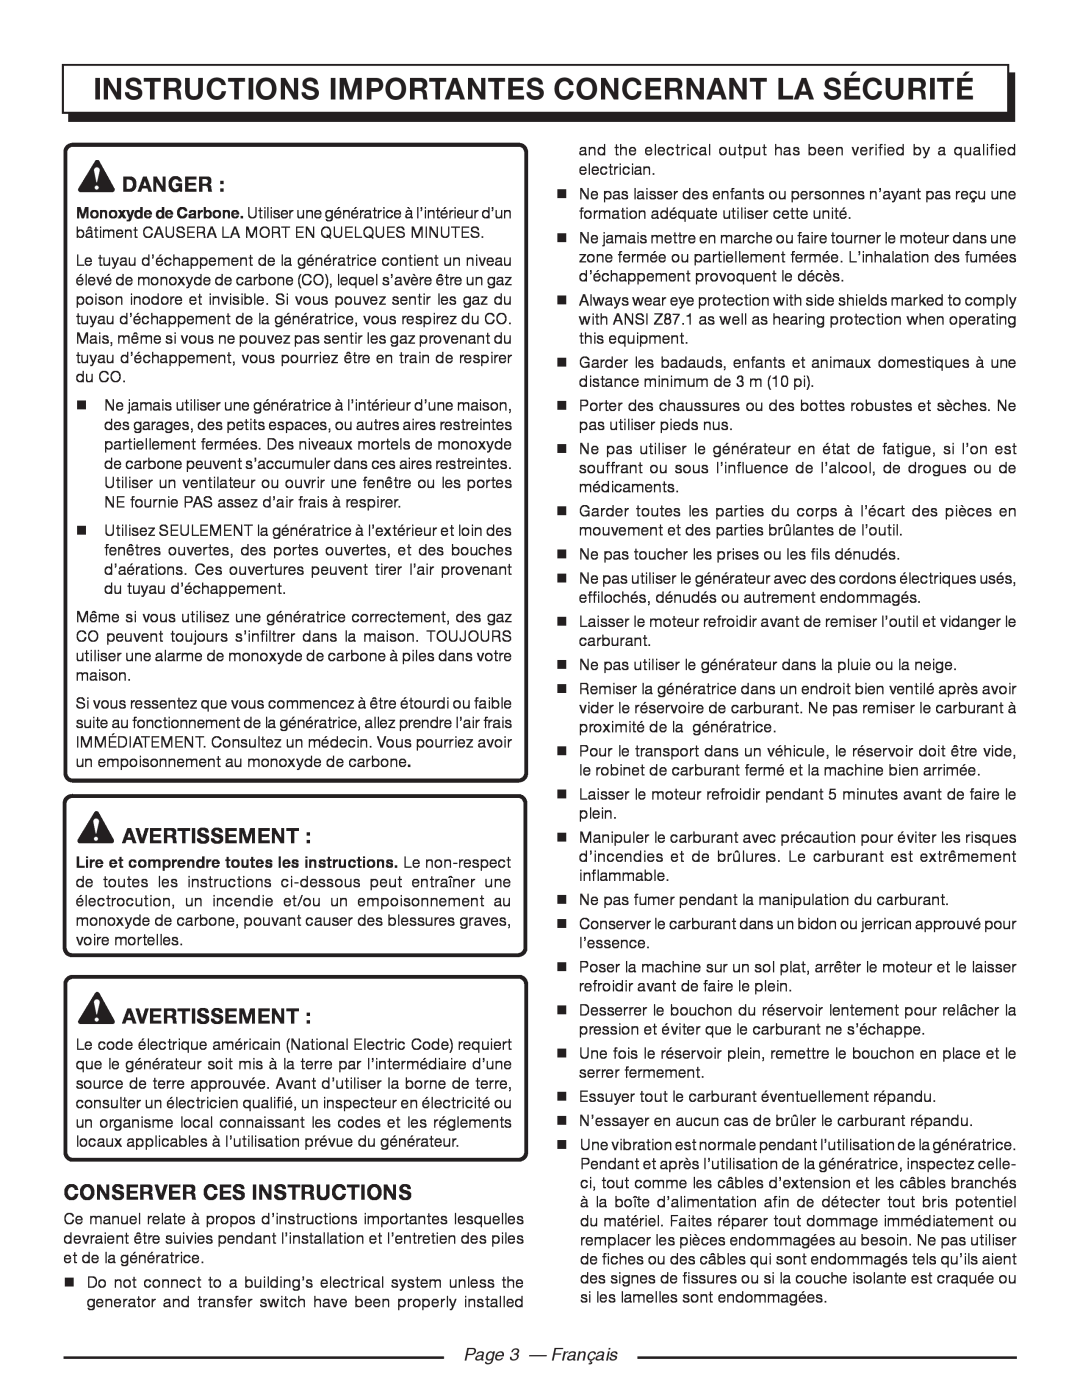 Homelite HGCA5700 Instructions Importantes Concernant La Sécurité, Avertissement, Conserver Ces Instructions, Danger 